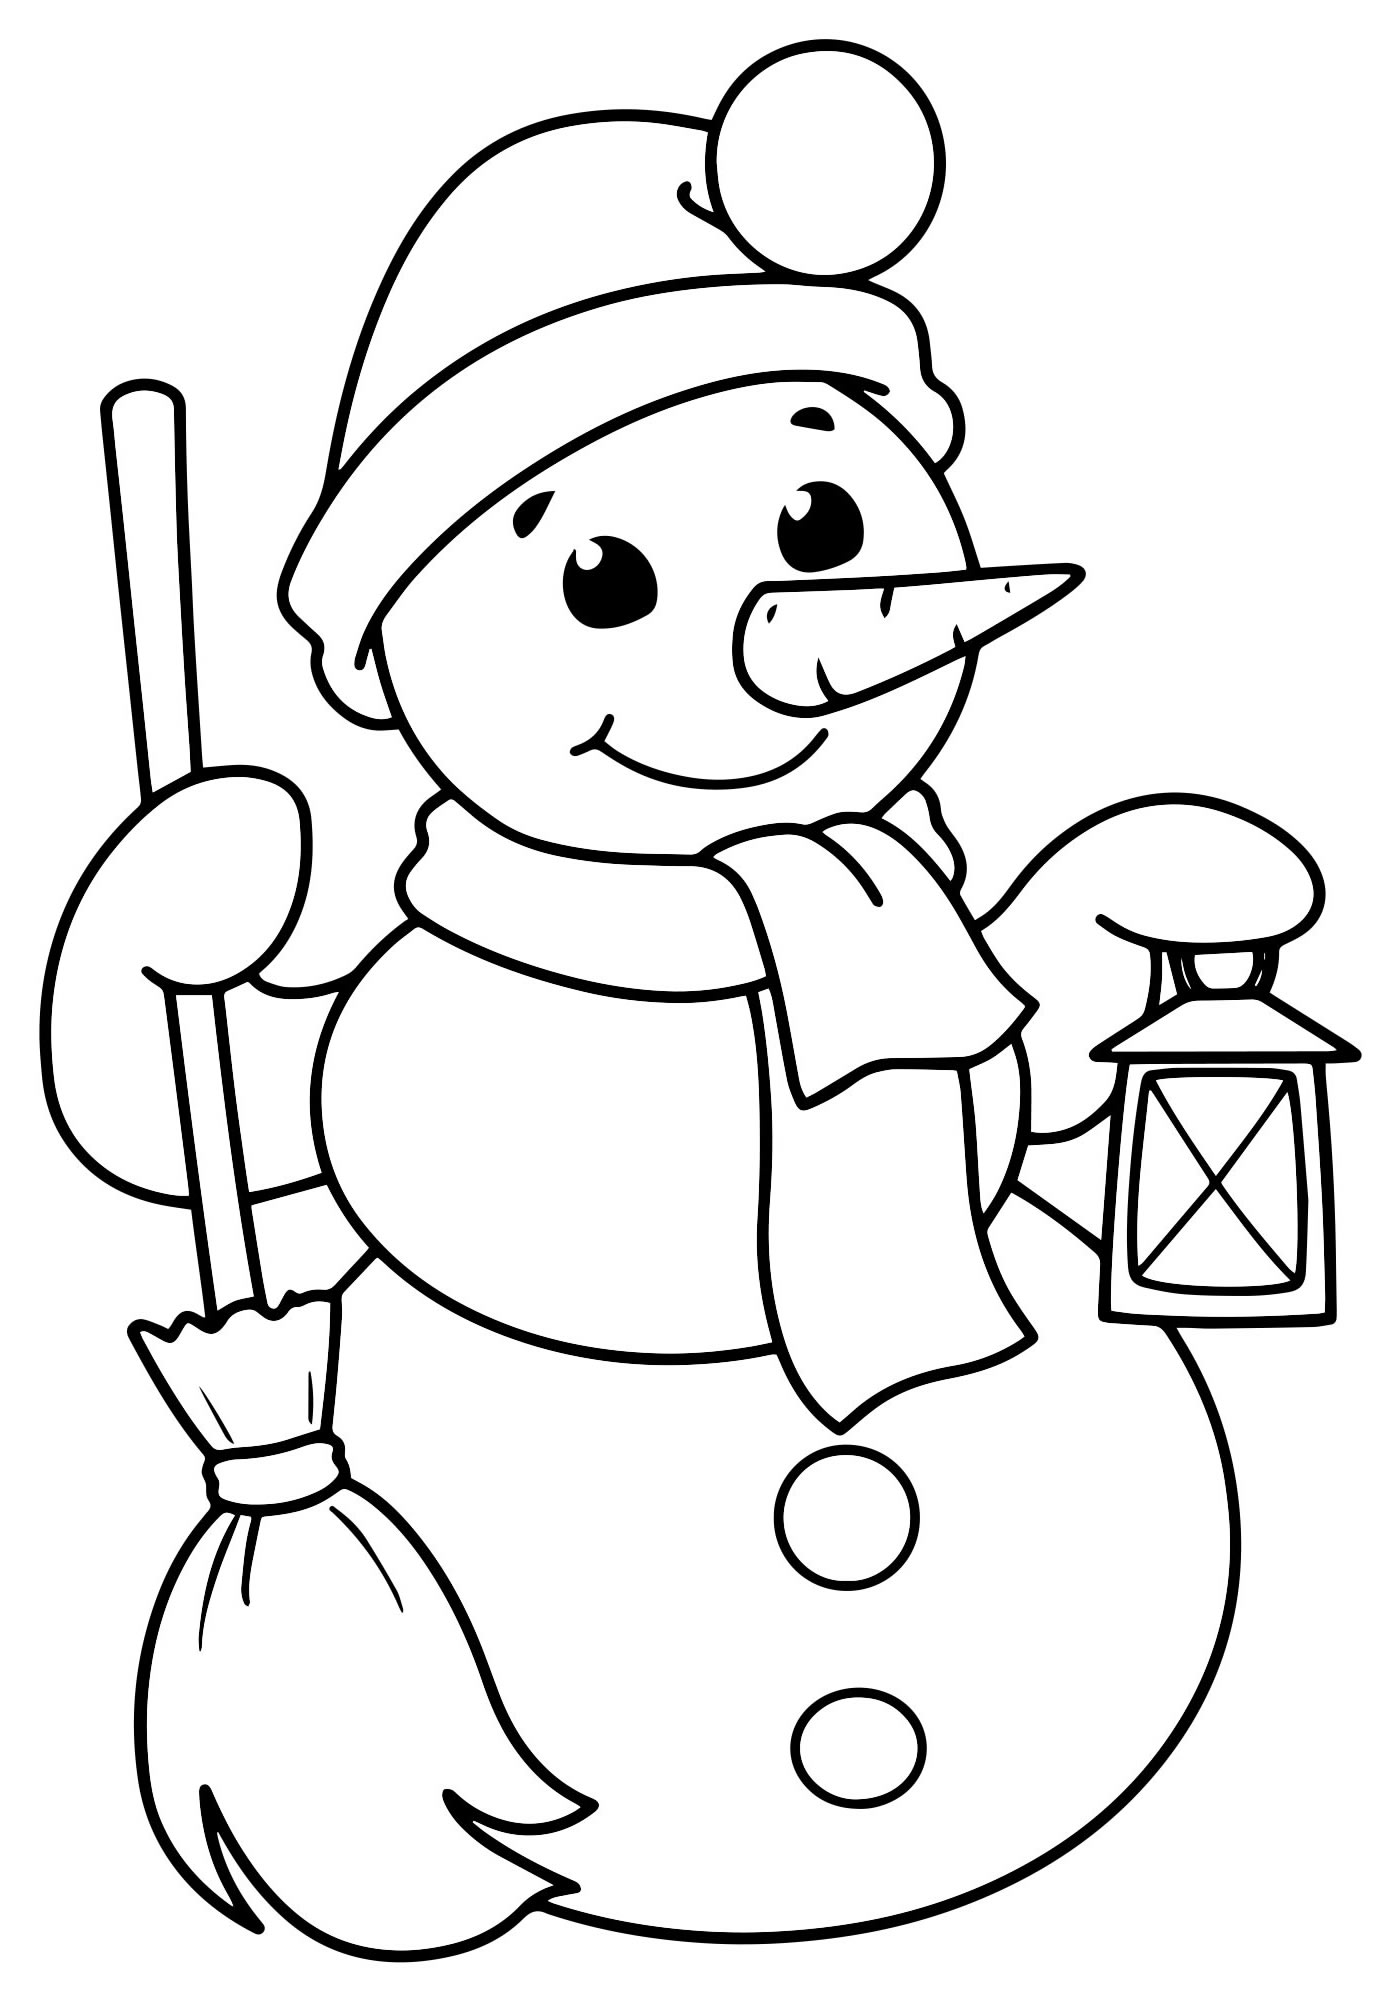 Фото по запросу Раскраска снеговик - страница 3